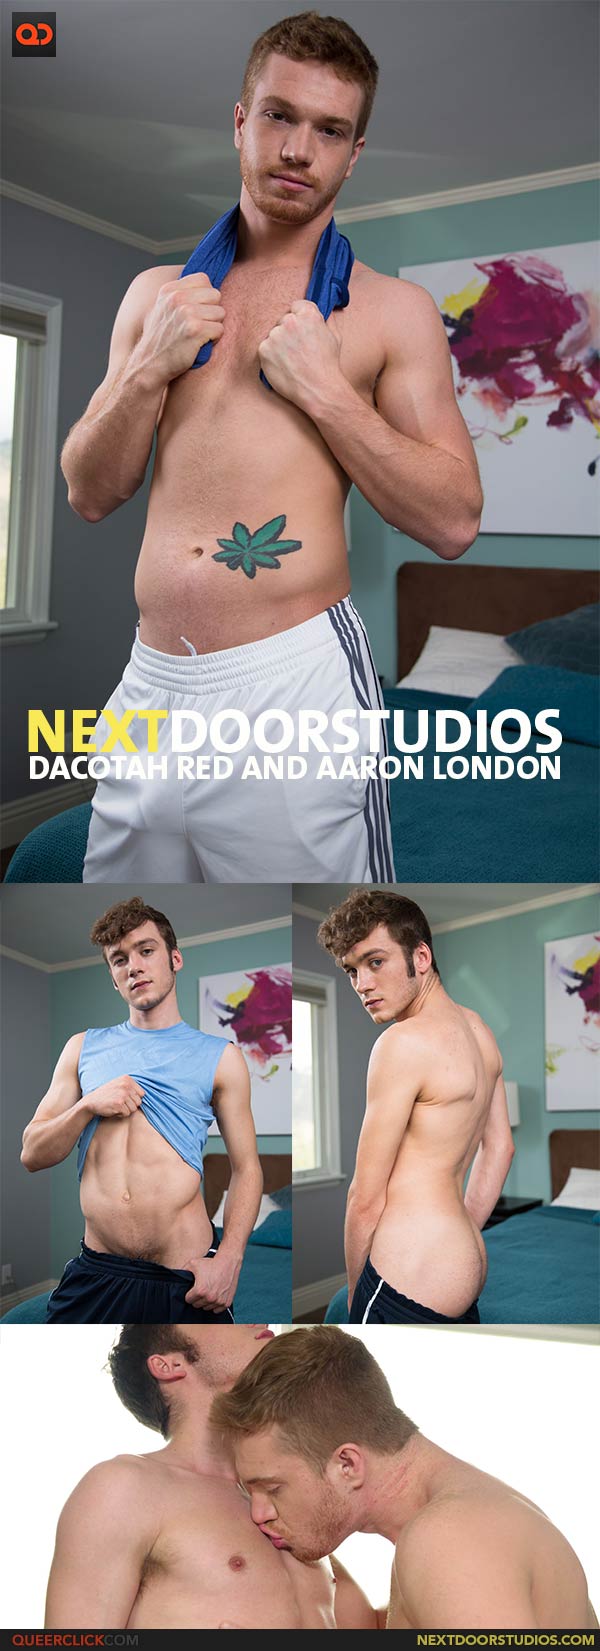 Next Door Studios:  Dacotah Red and Aaron London